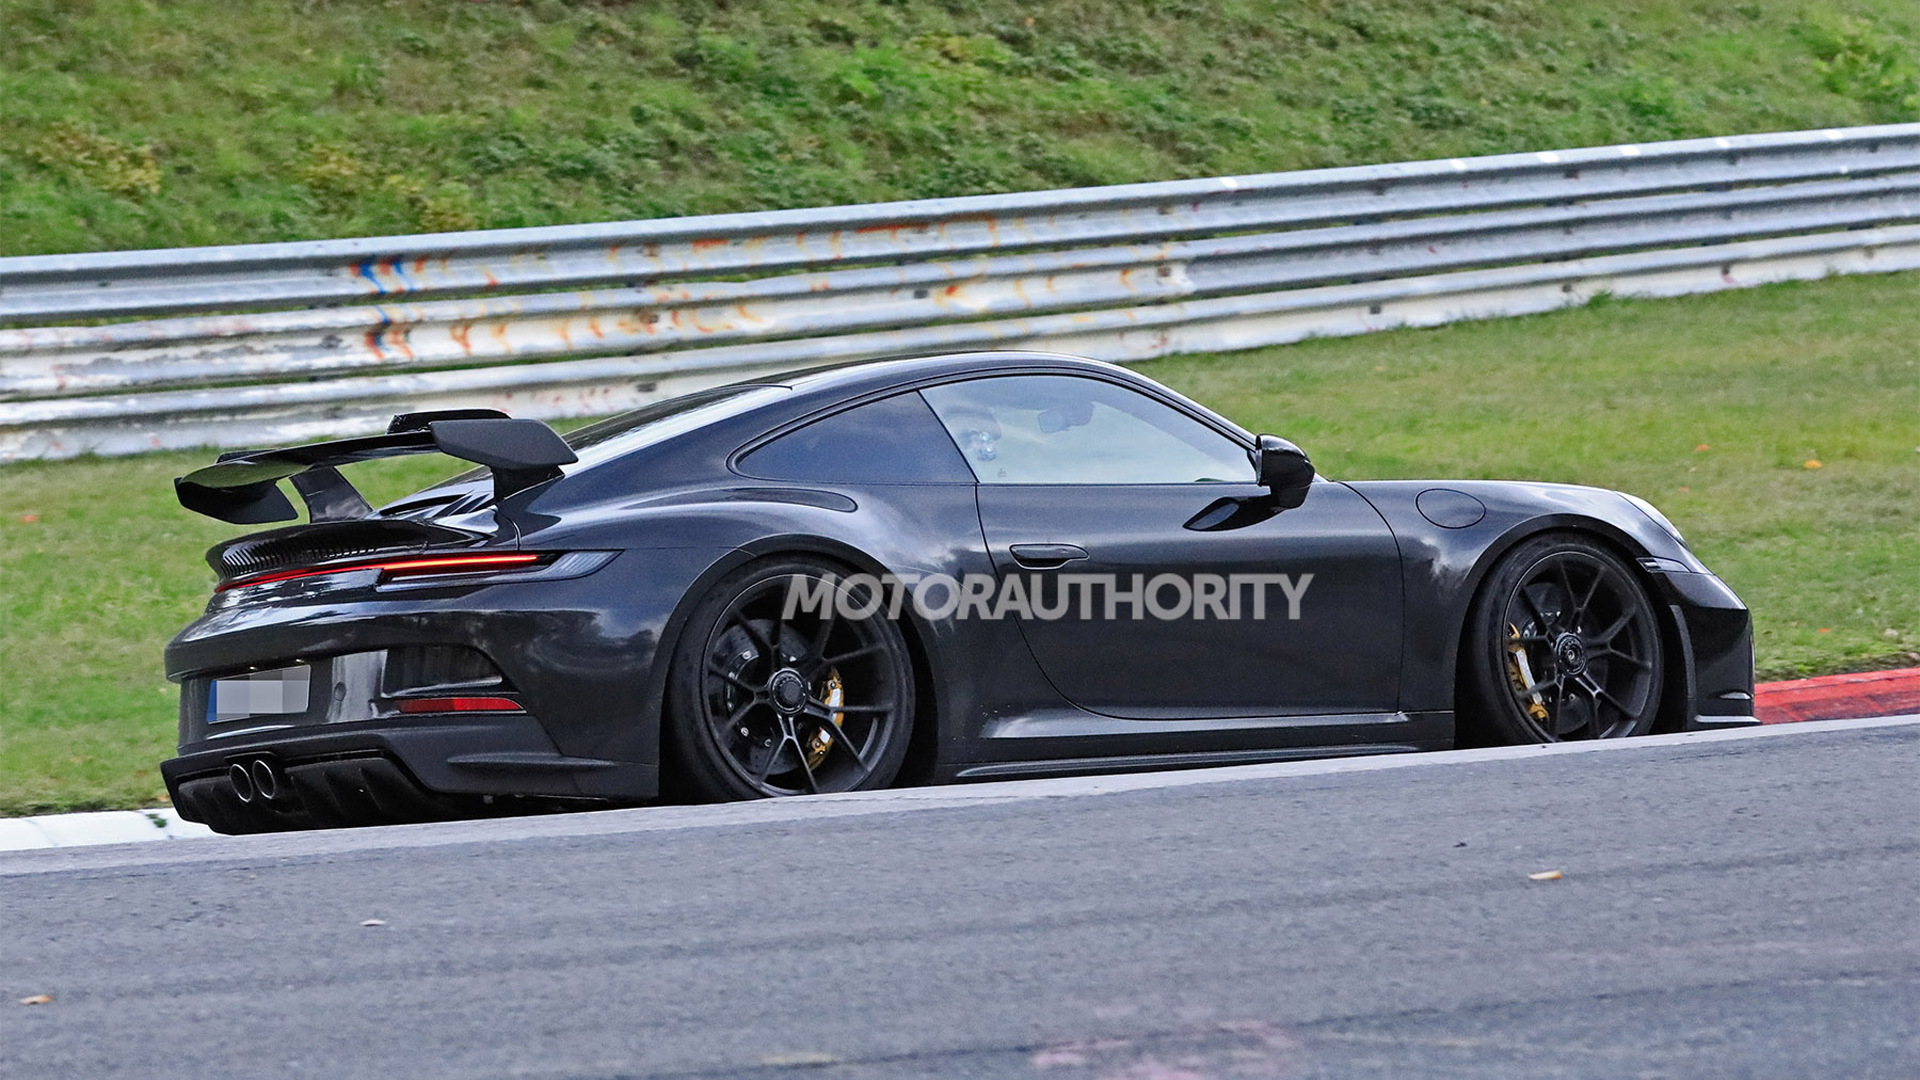 2021 Porsche 911 GT3 spy shots - Photo credit: S. Baldauf/SB-Medien